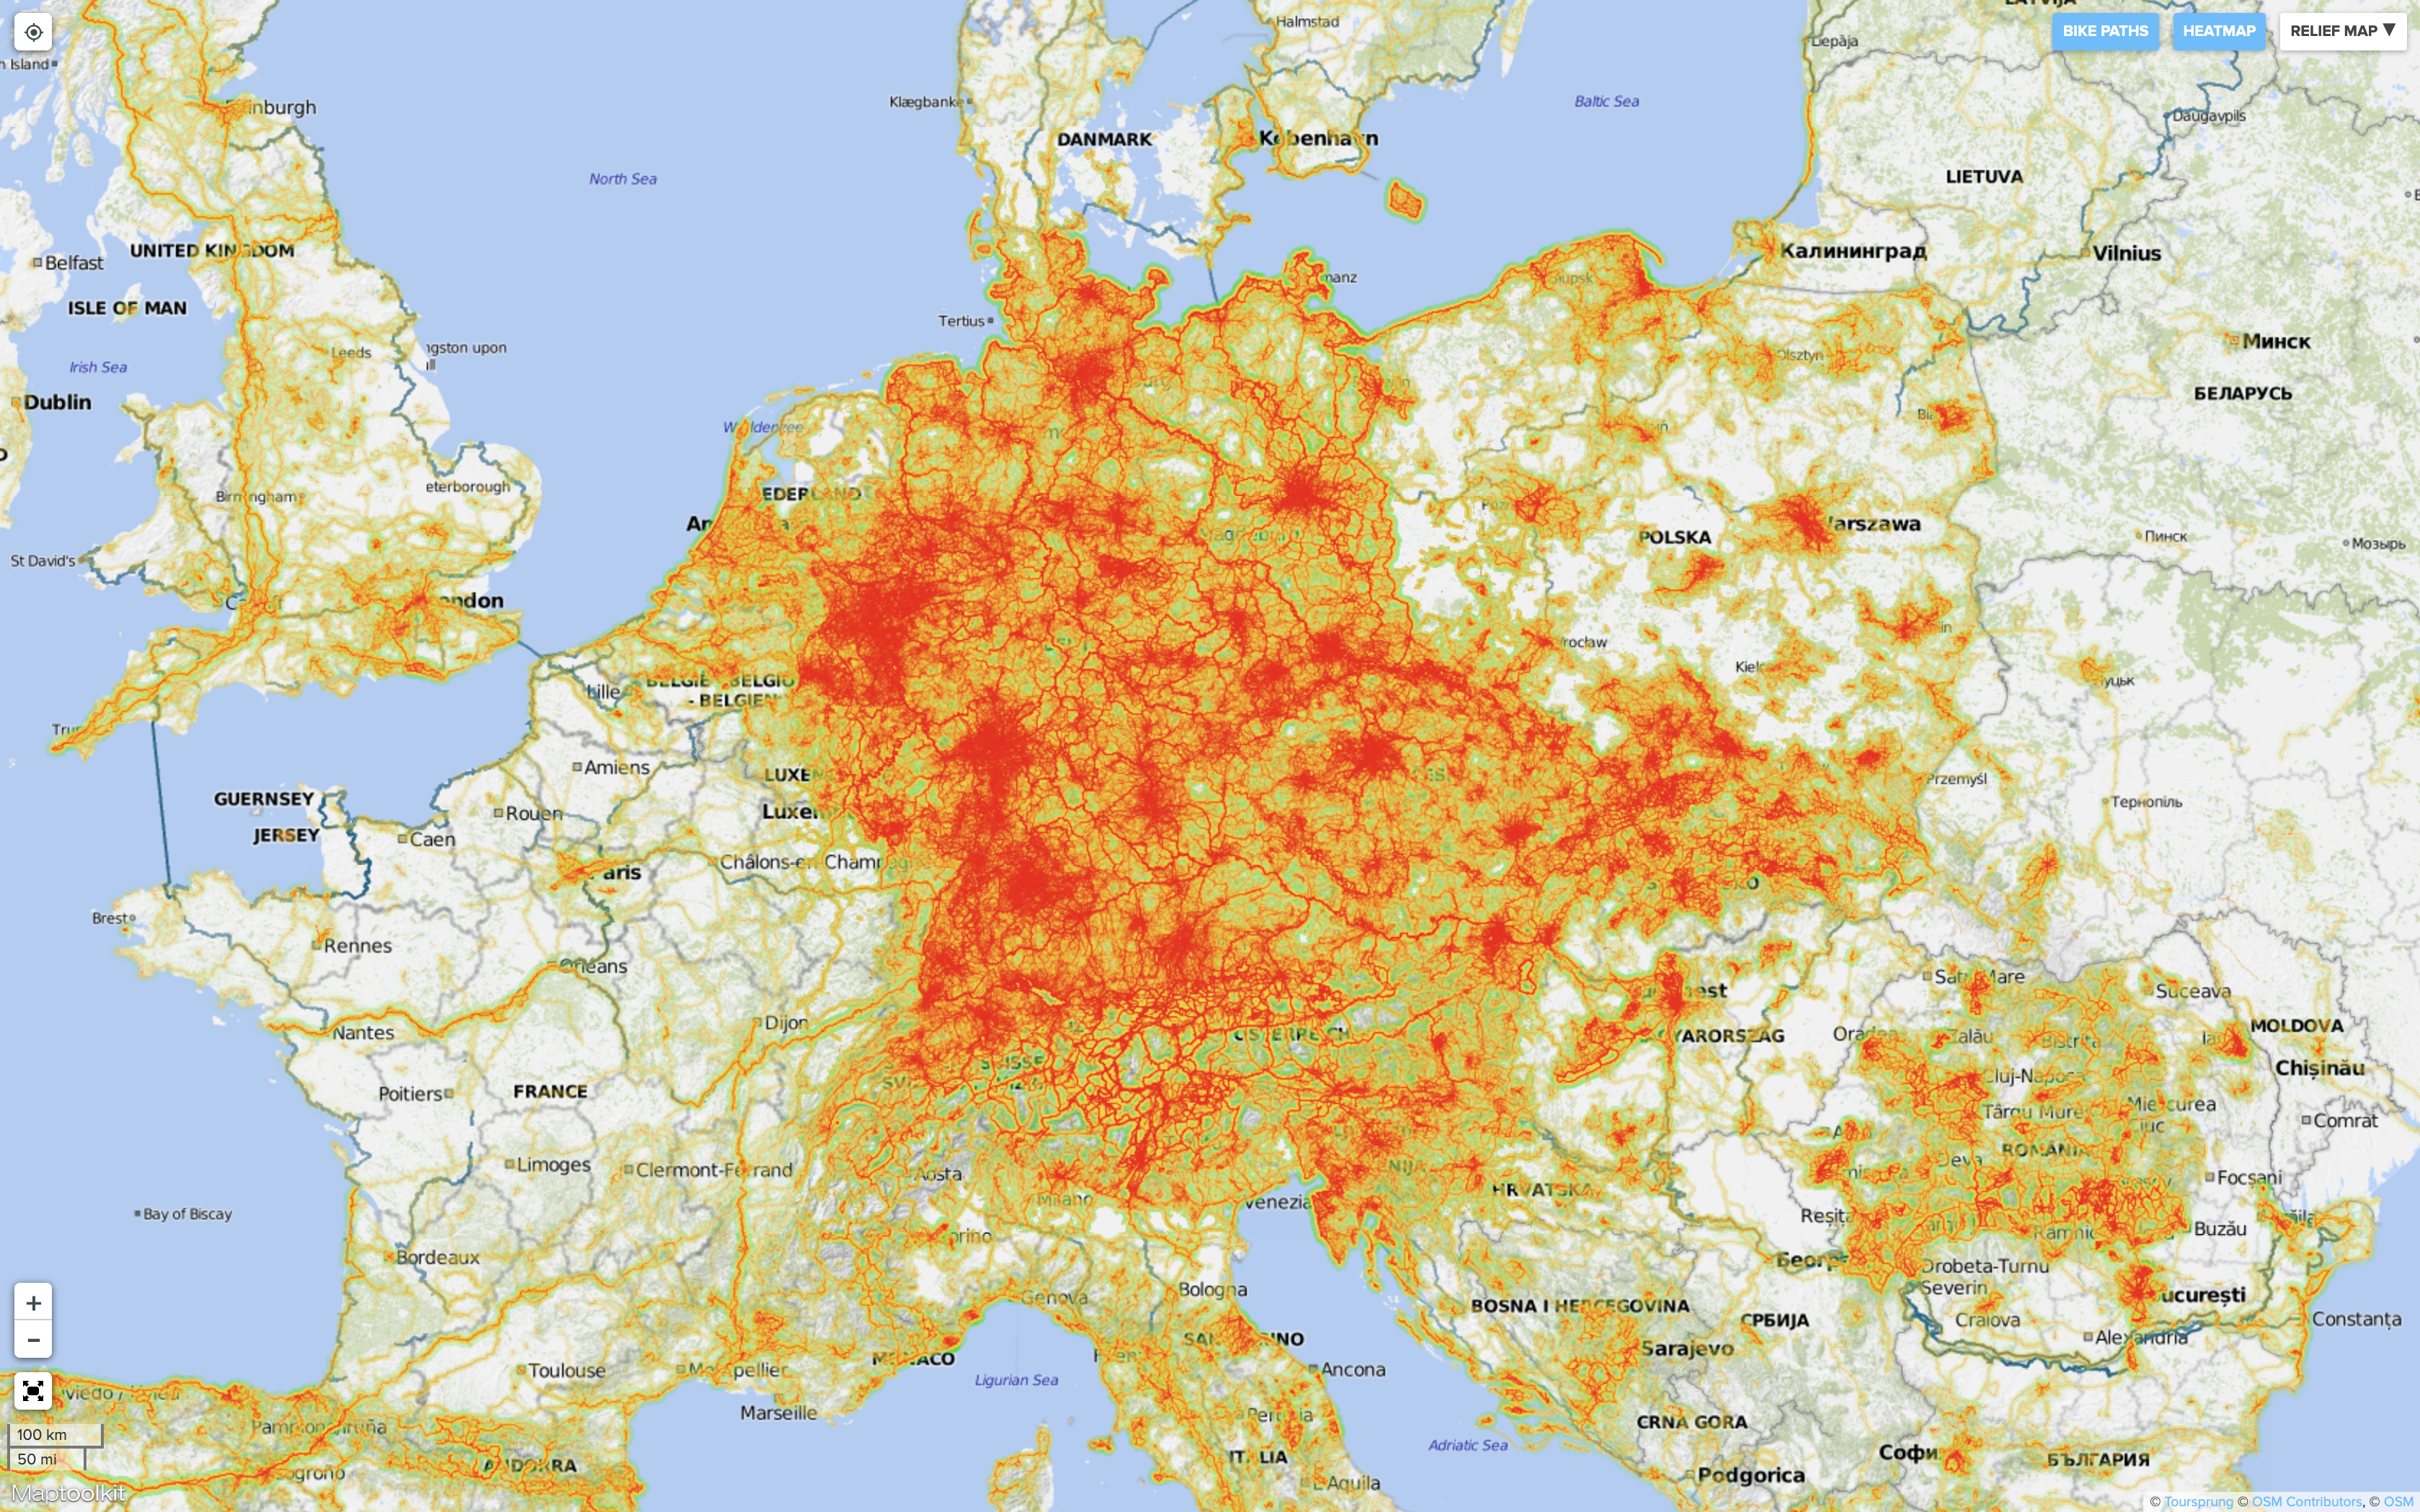 Карта «Байкмэп» с маршрутами для велосипедистов. Красным отмечены велодорожки. Источник: Bikemap.net